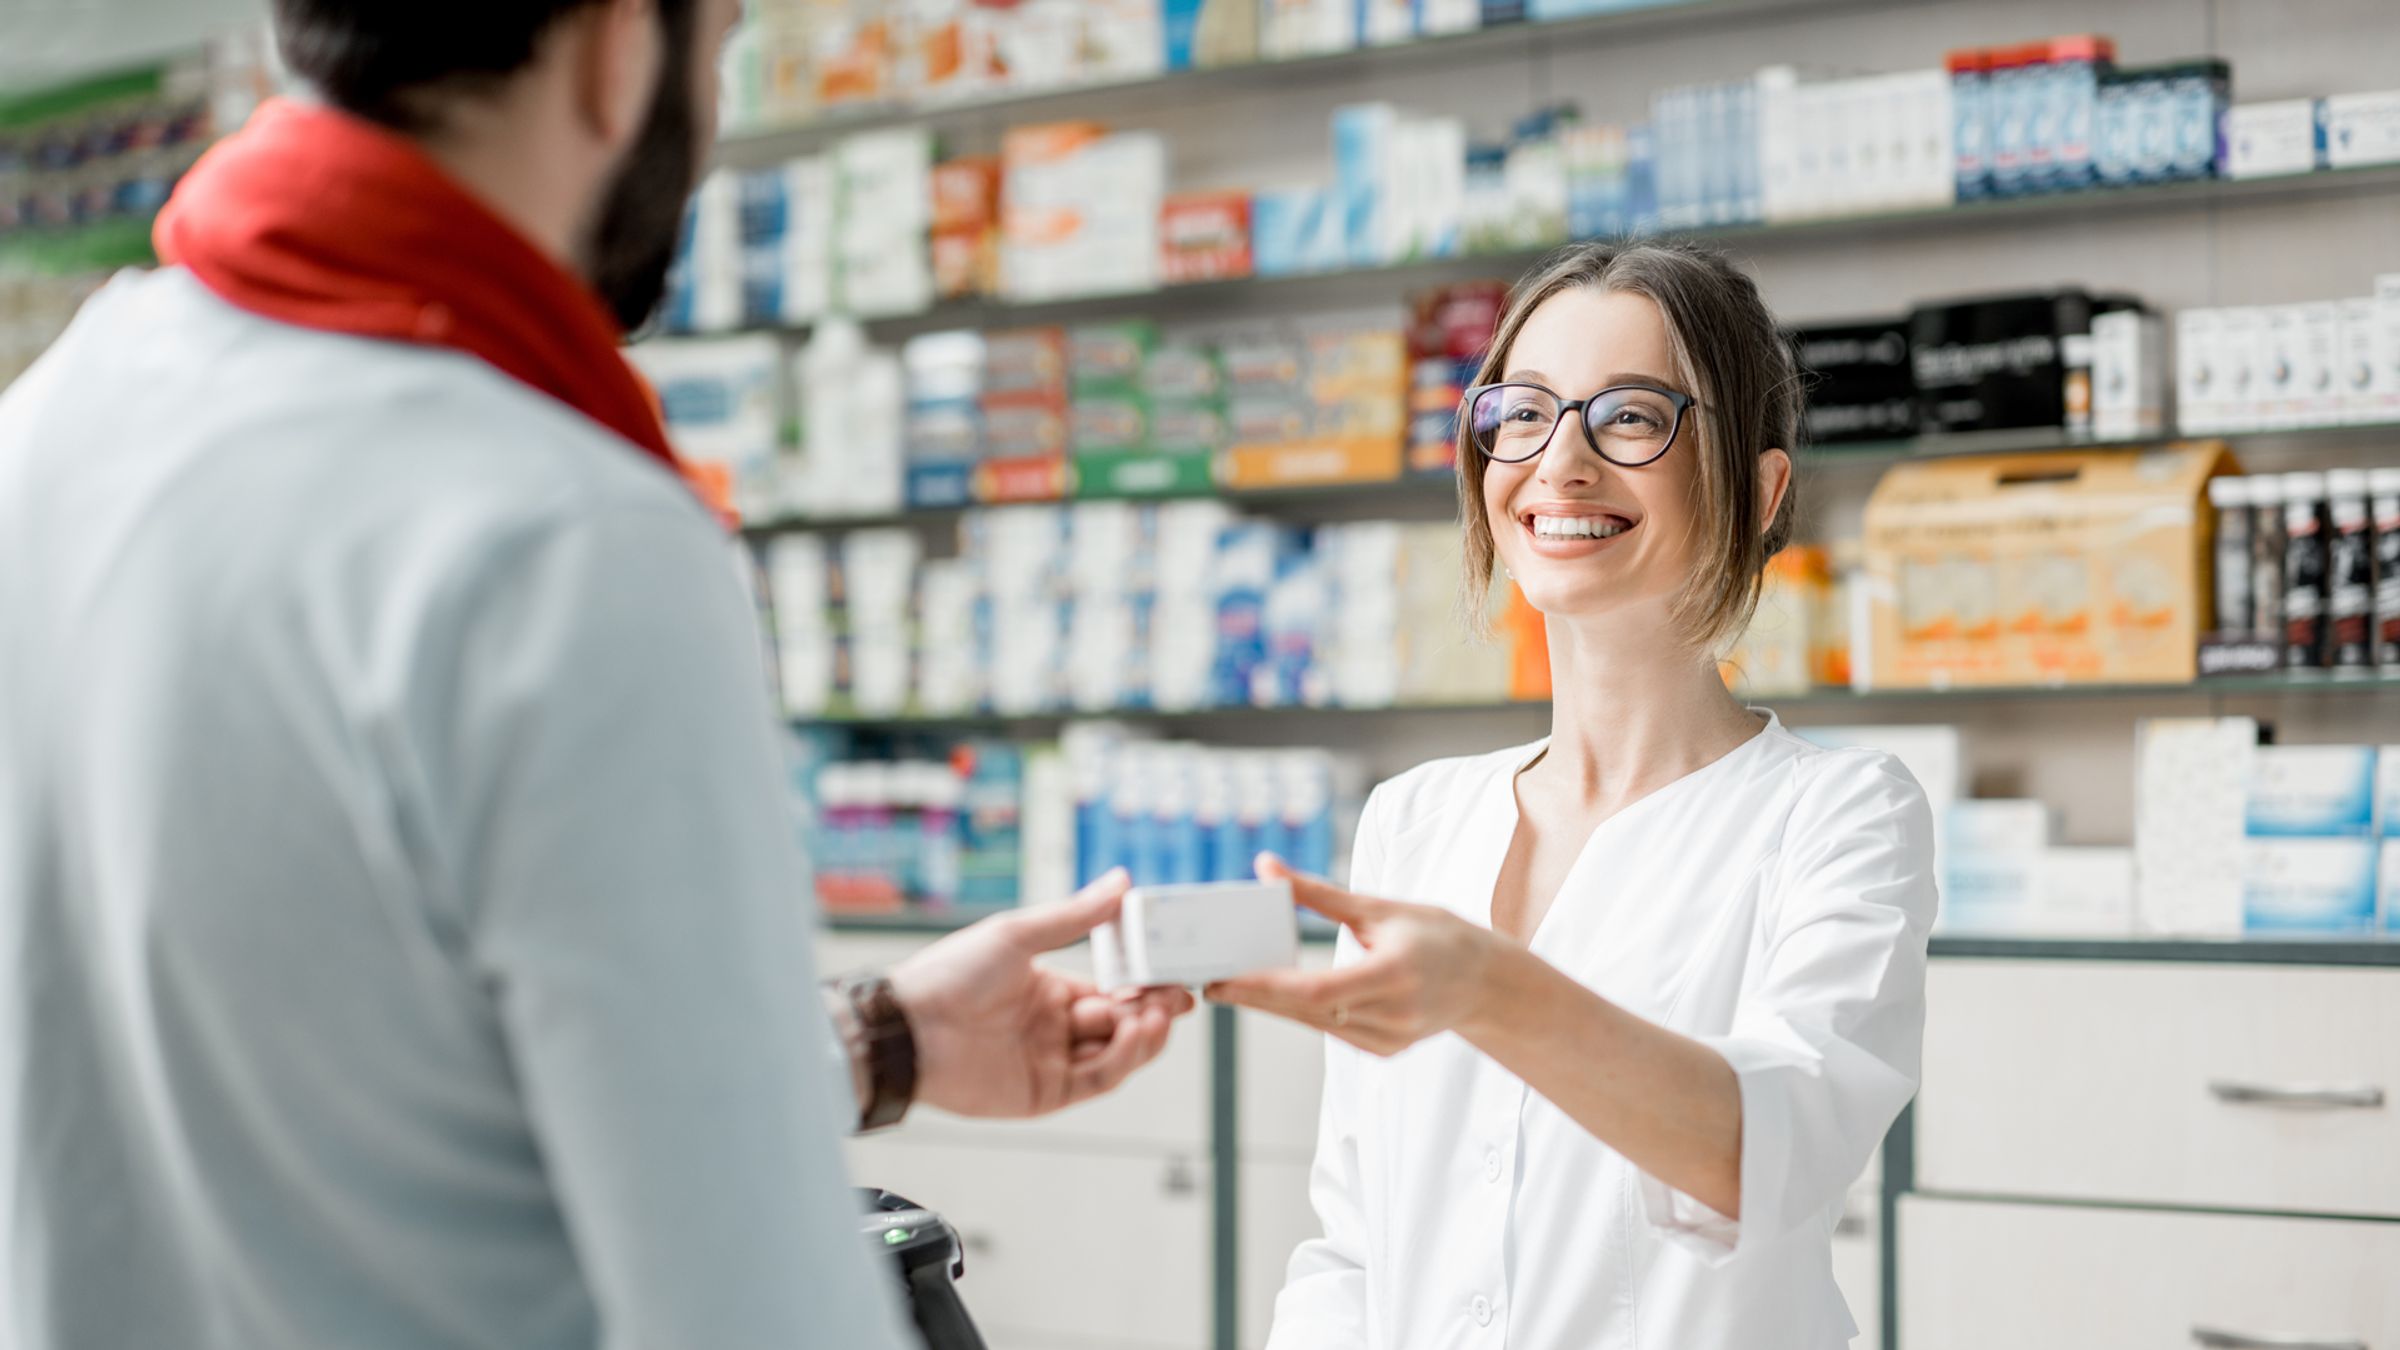 Une pharmacienne conseille un type de médicament à un client